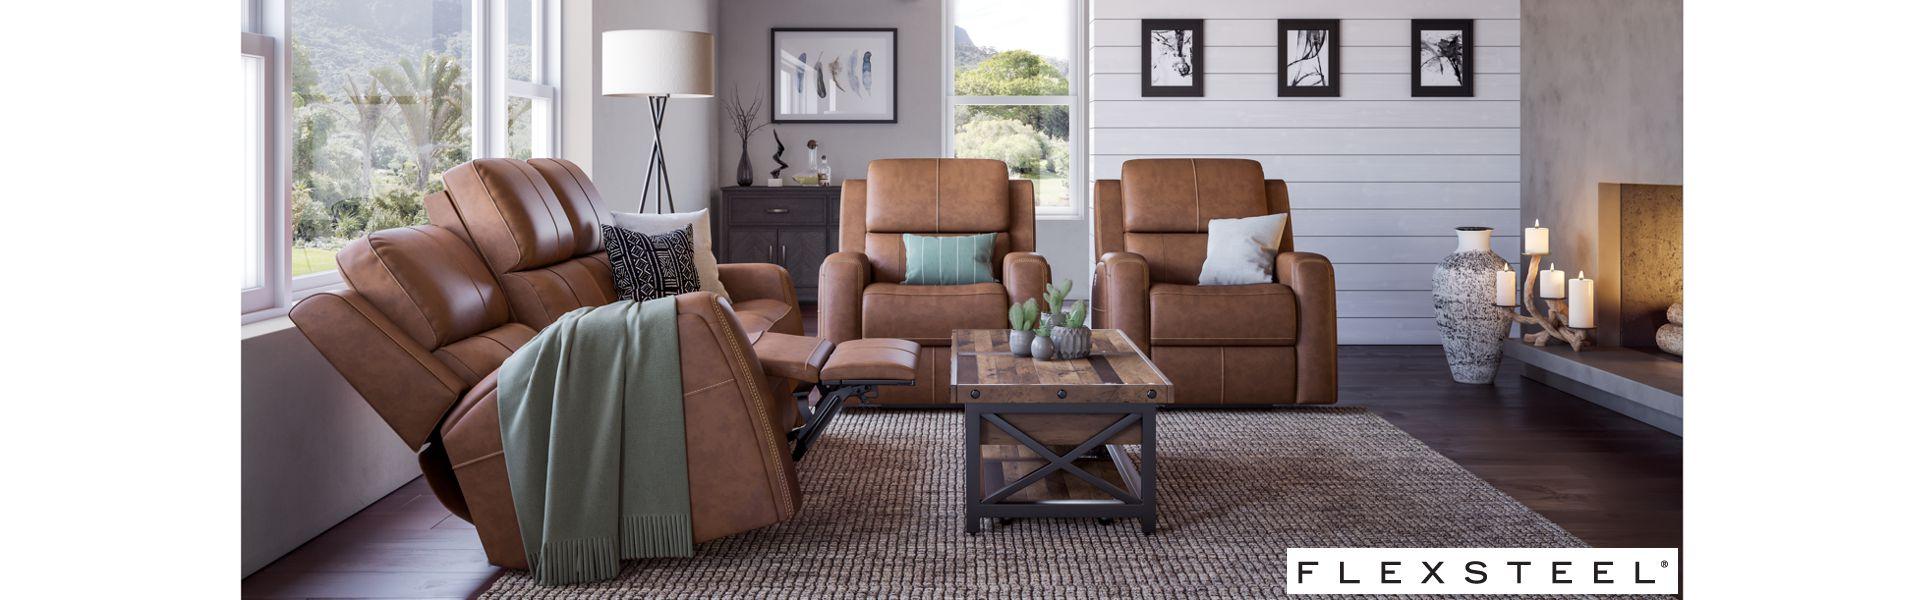 Flexsteel Upholstered Furniture